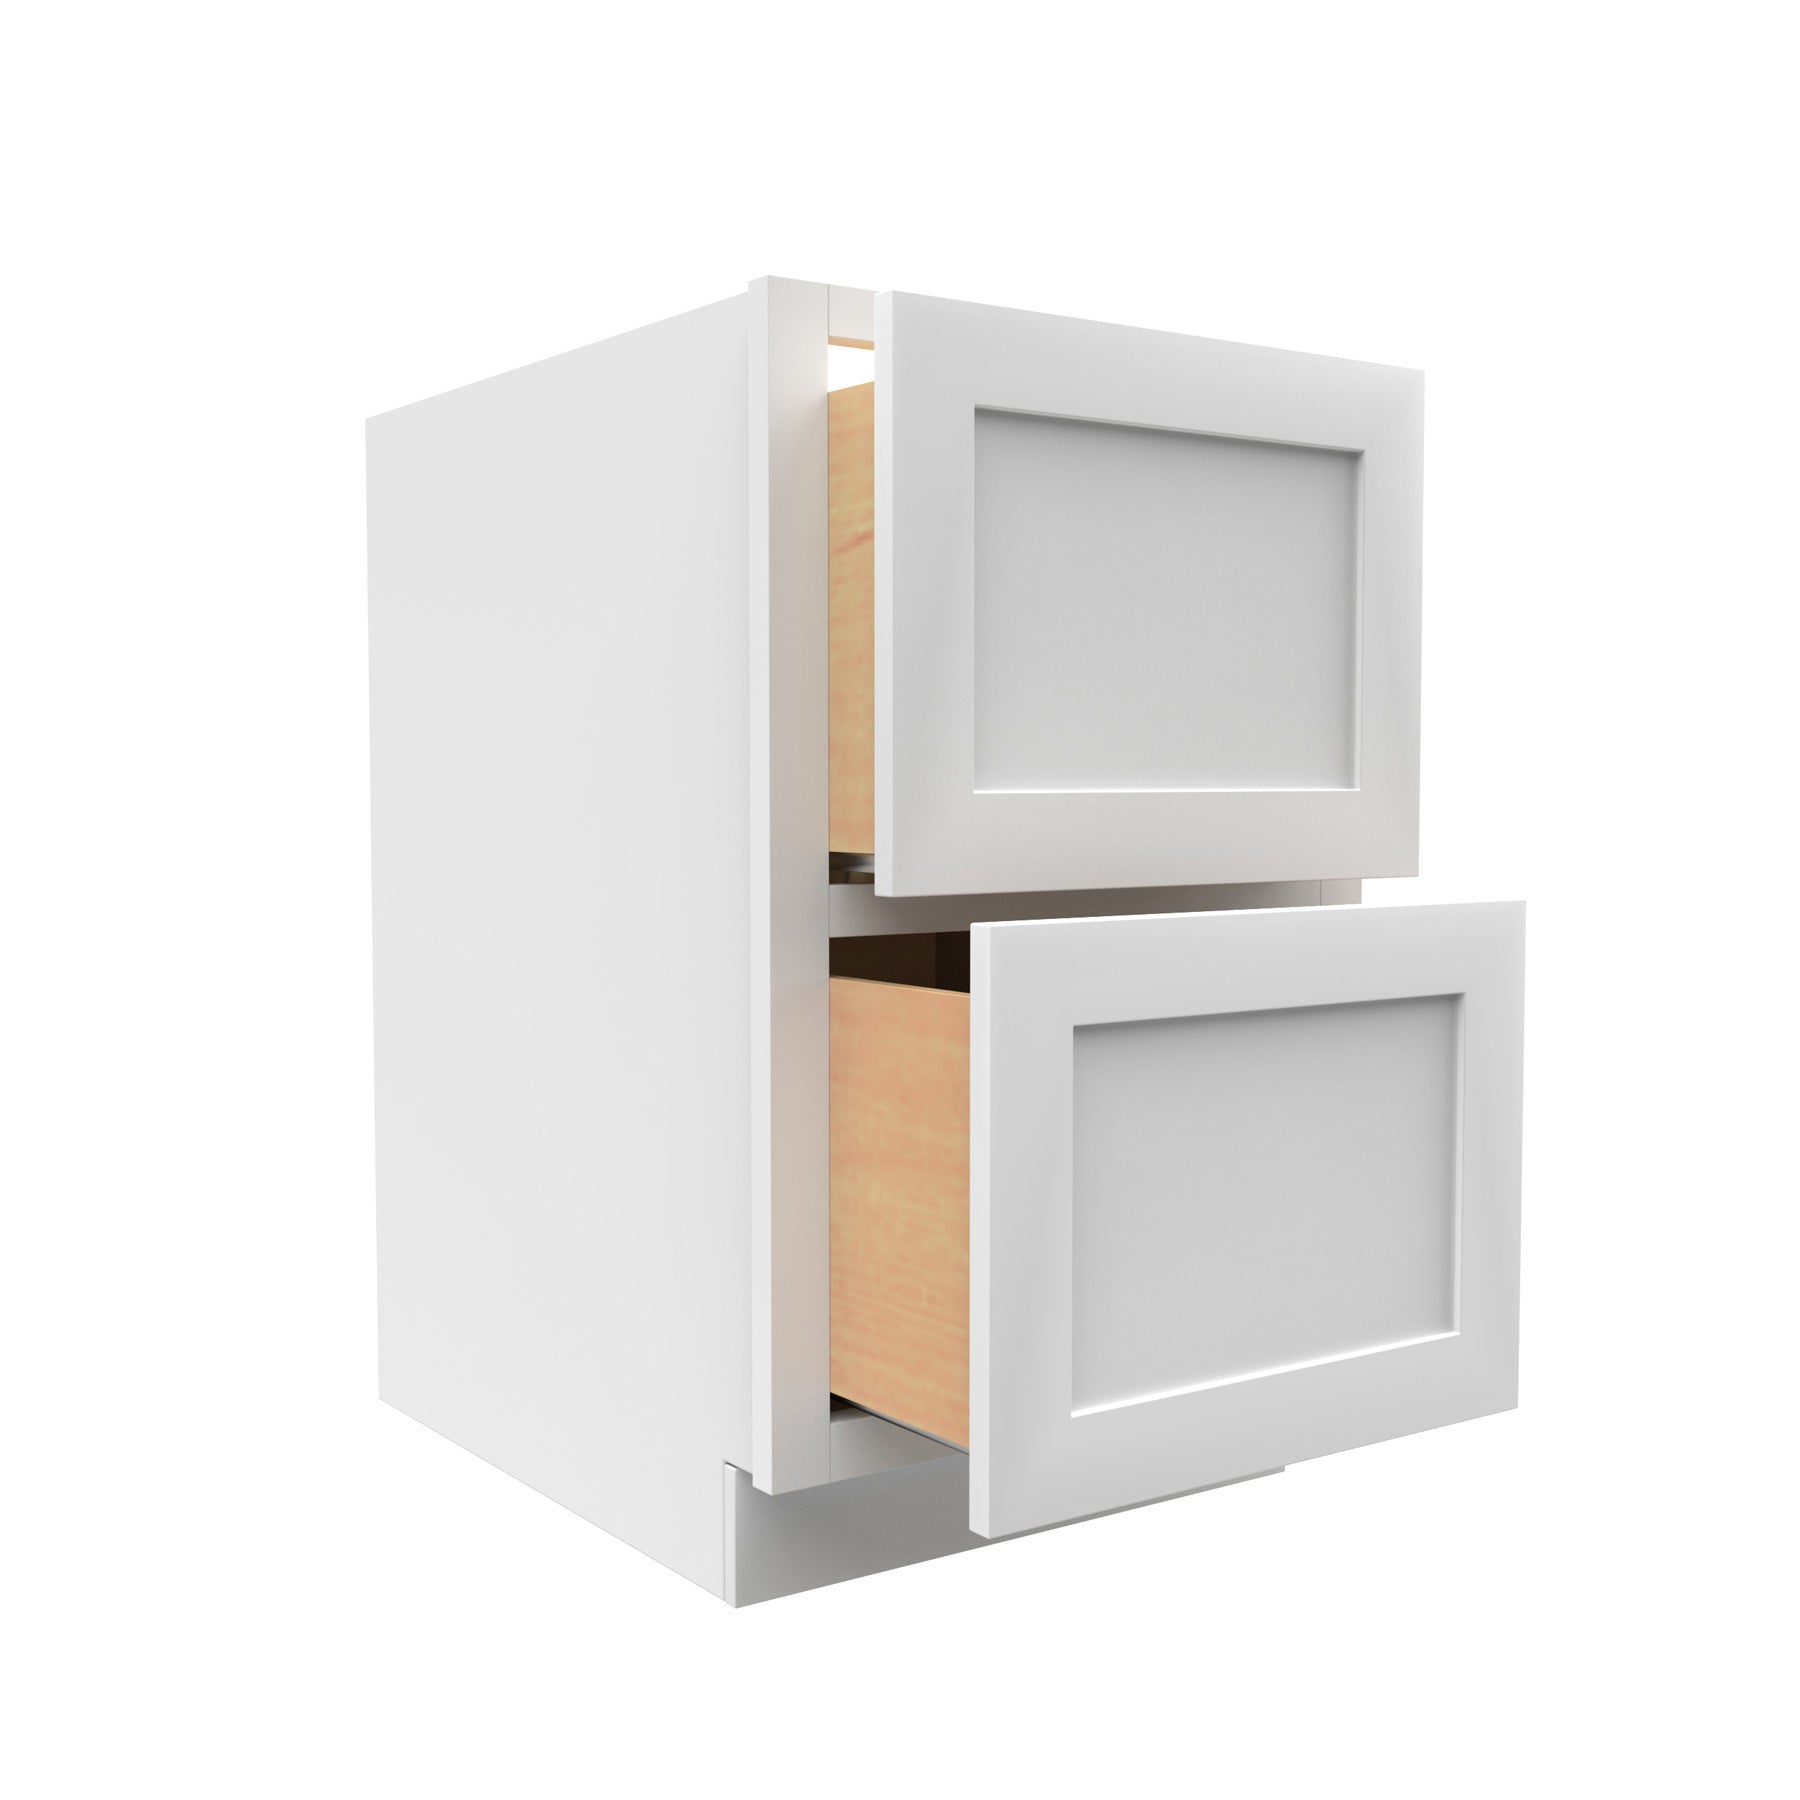 RTA - Elegant White - 2 Drawer Base Cabinet | 36"W x 34.5"H x 24"D